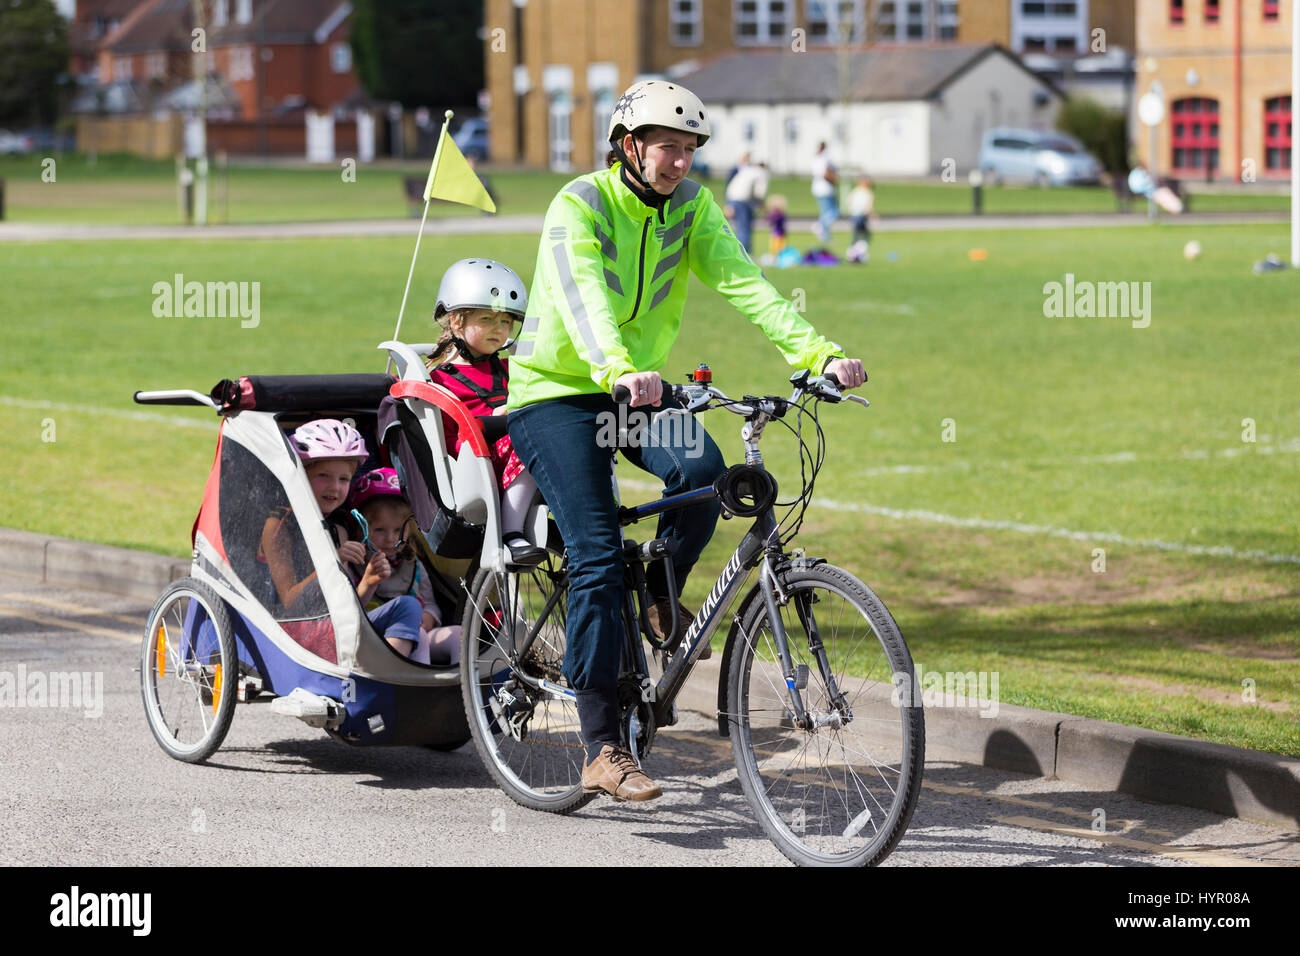 Frau Radfahrer auf Bike / Fahrrad mit + 3 Kinder; Co-Pilot Kindersitz mit Helm & Abschleppen Zyklus Chariot Anhänger mit zwei / 2 Kinder mit Helmen. VEREINIGTES KÖNIGREICH. Stockfoto